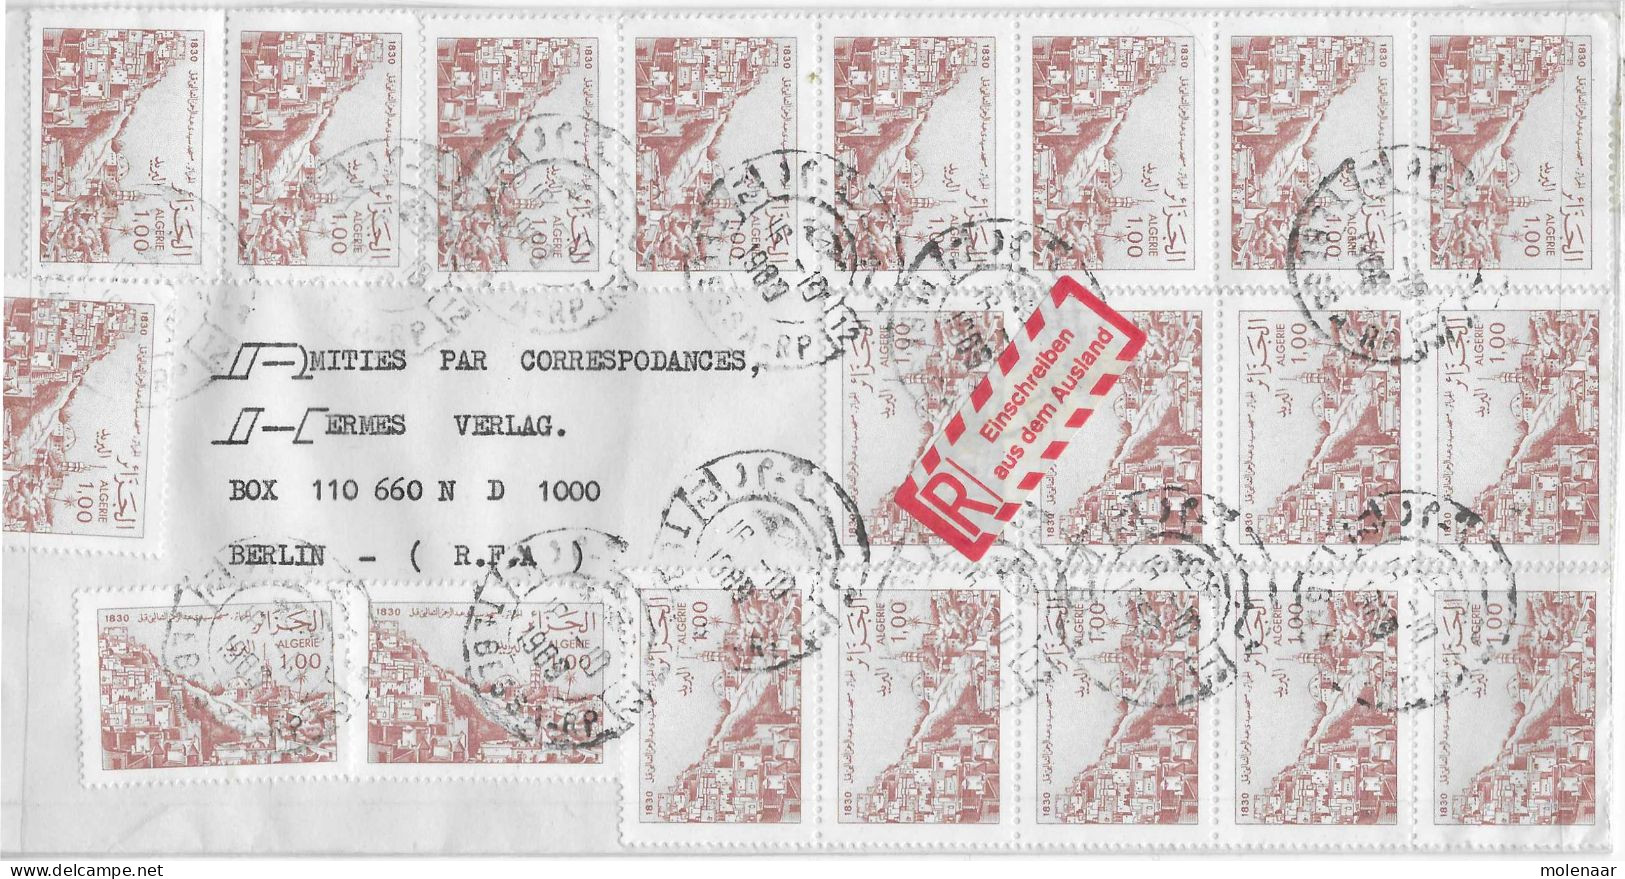 Postzegels > Afrika > Algerije (1962-...)>aangetekende Luchtpostbrief  Met 20 Postzegels  (17801) - Algérie (1962-...)